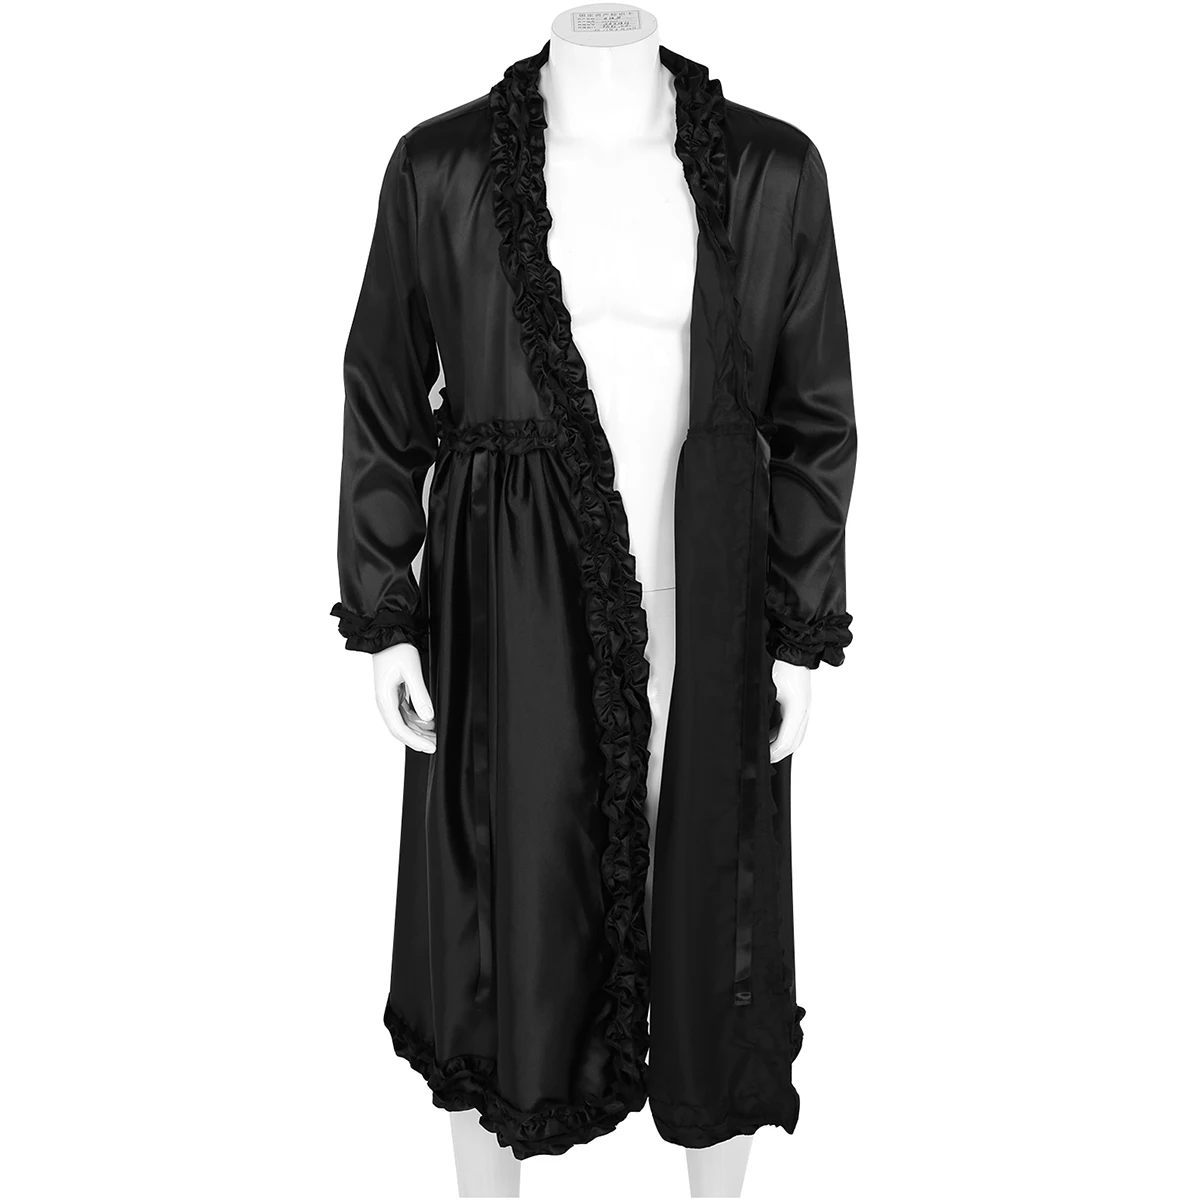 Мужской халат из искусственного шелковистого атласа, халат, женское белье с длинными рукавами, рюшами и v-образным вырезом, длинная ночная рубашка, домашняя одежда